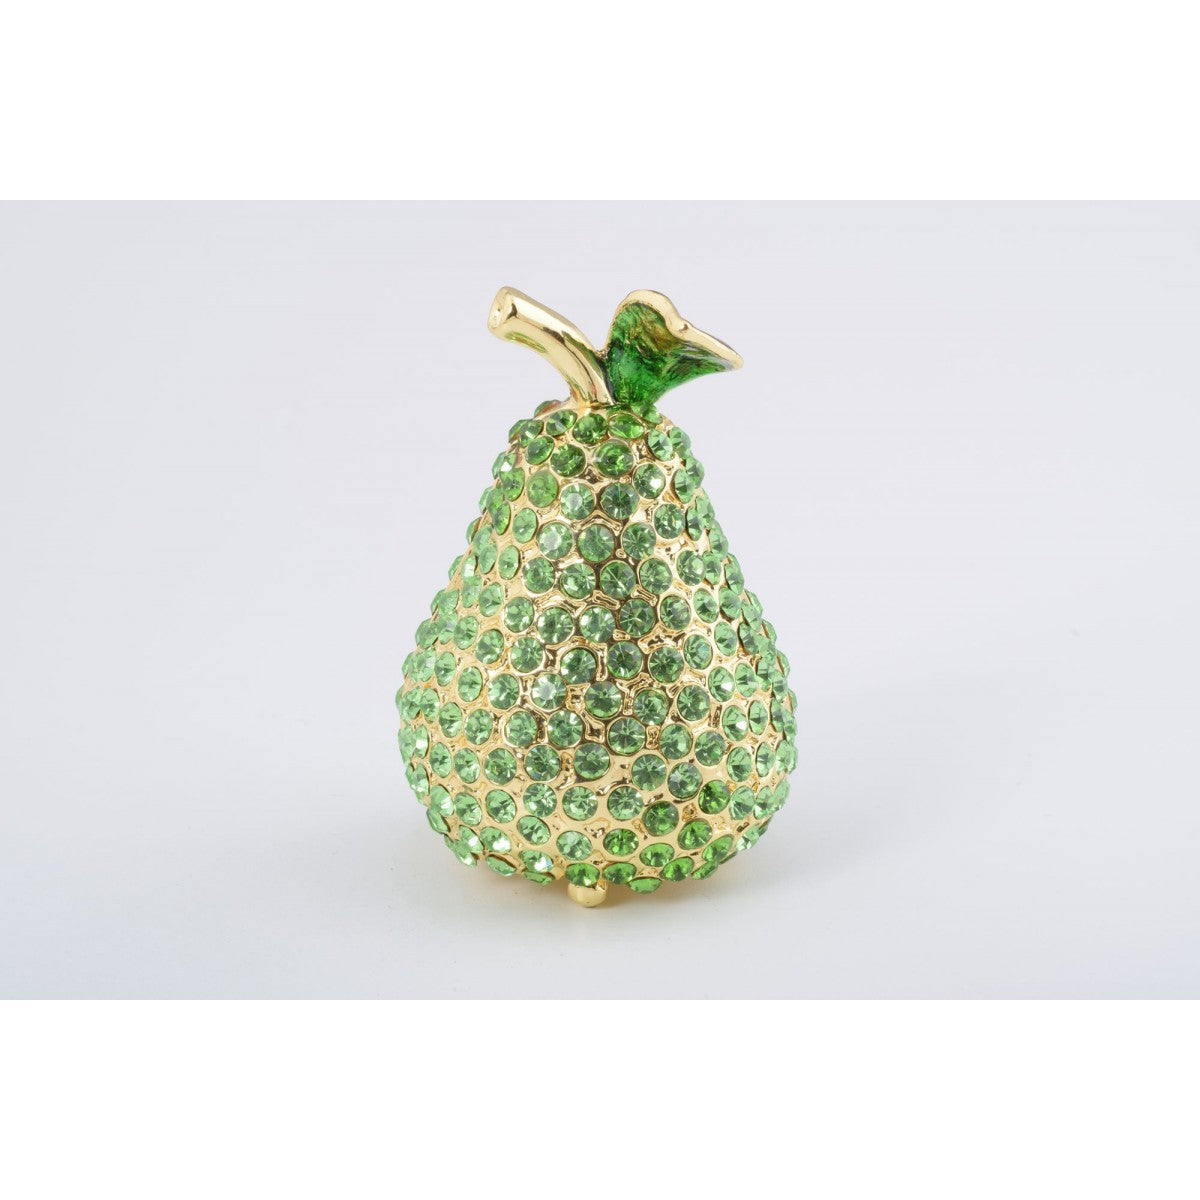 Pear Trinket Box by Keren Kopal